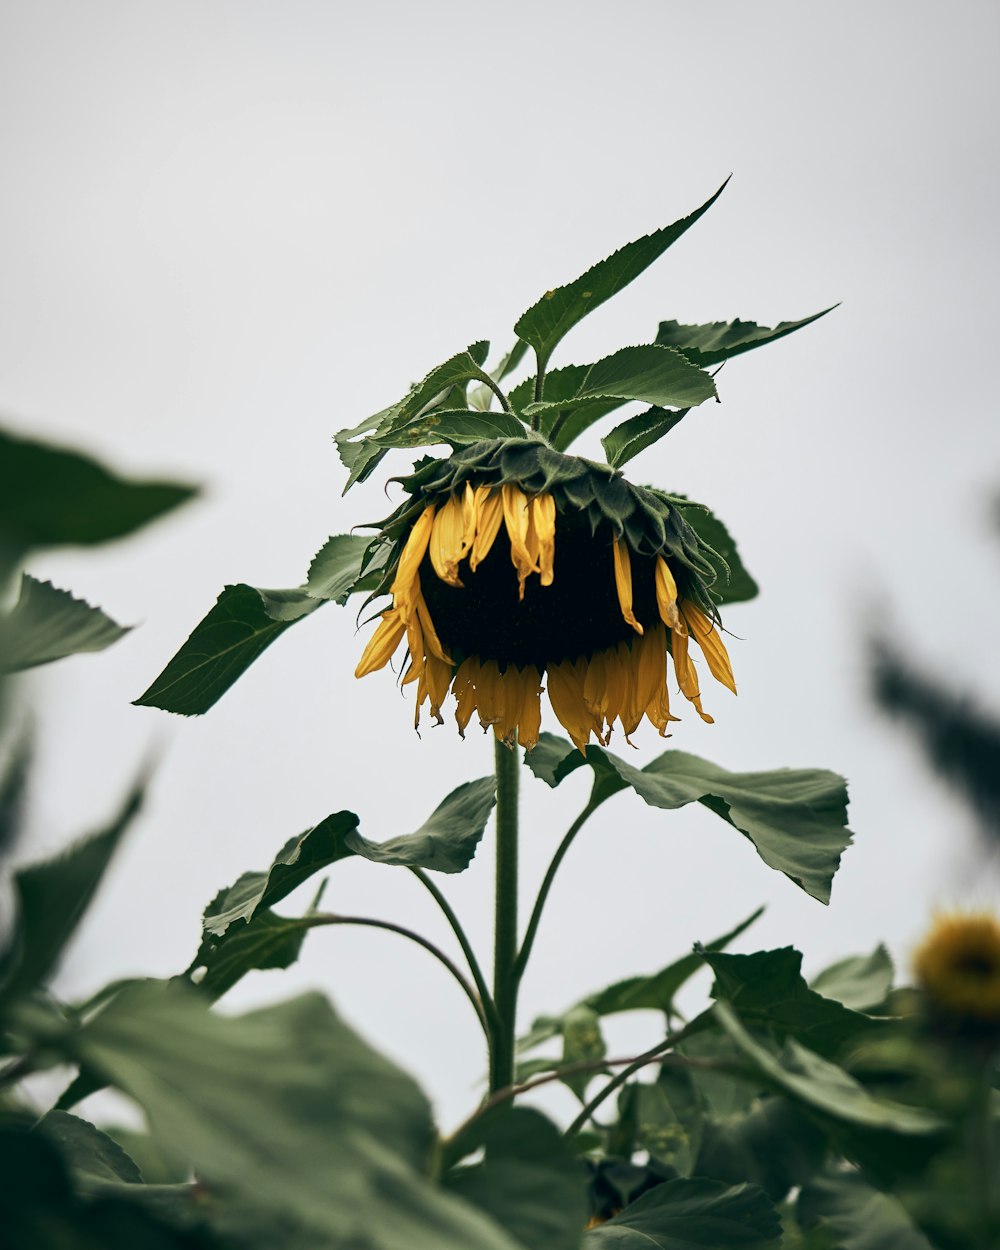 closeup photo of yellow sunflower